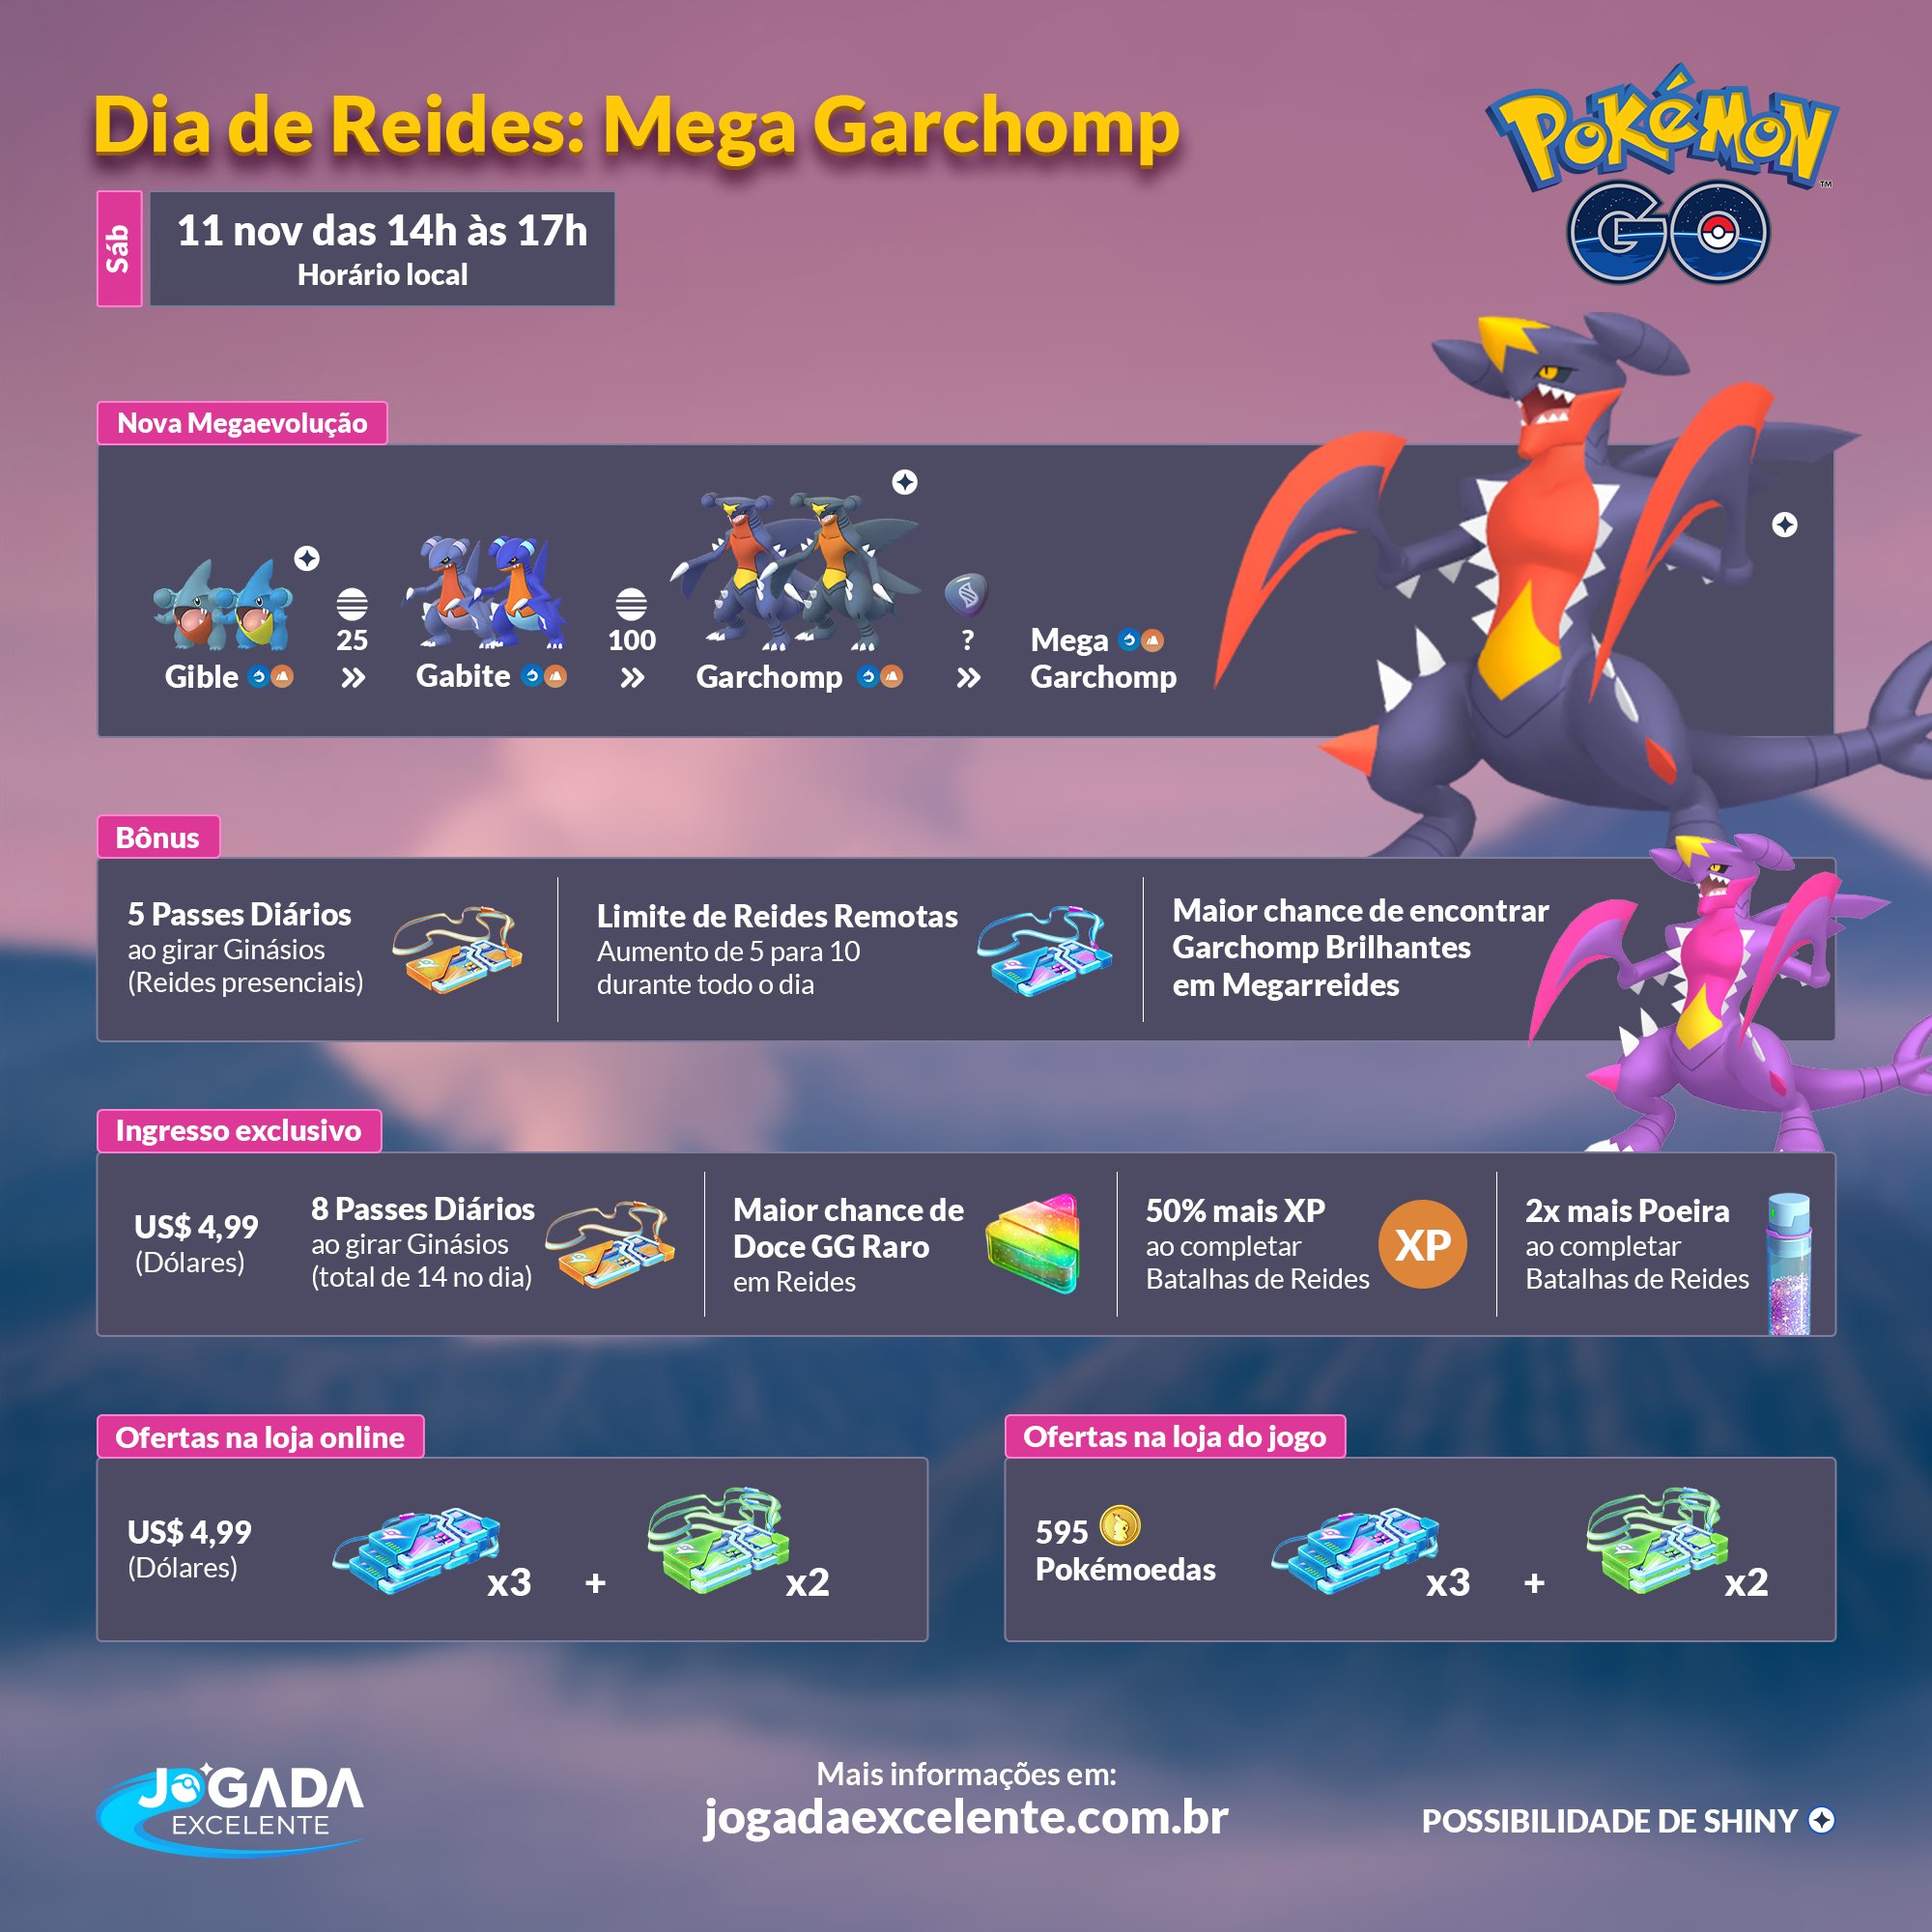 Jogada Excelente on X: Pokémon GO: Mega Gardevoir retorna ao jogo como  Chefe de Megarreides. Confira quais são os Pokémon recomendados para  enfrentá-lo e se prepare! Data: 16/09 às 10h a 06/10